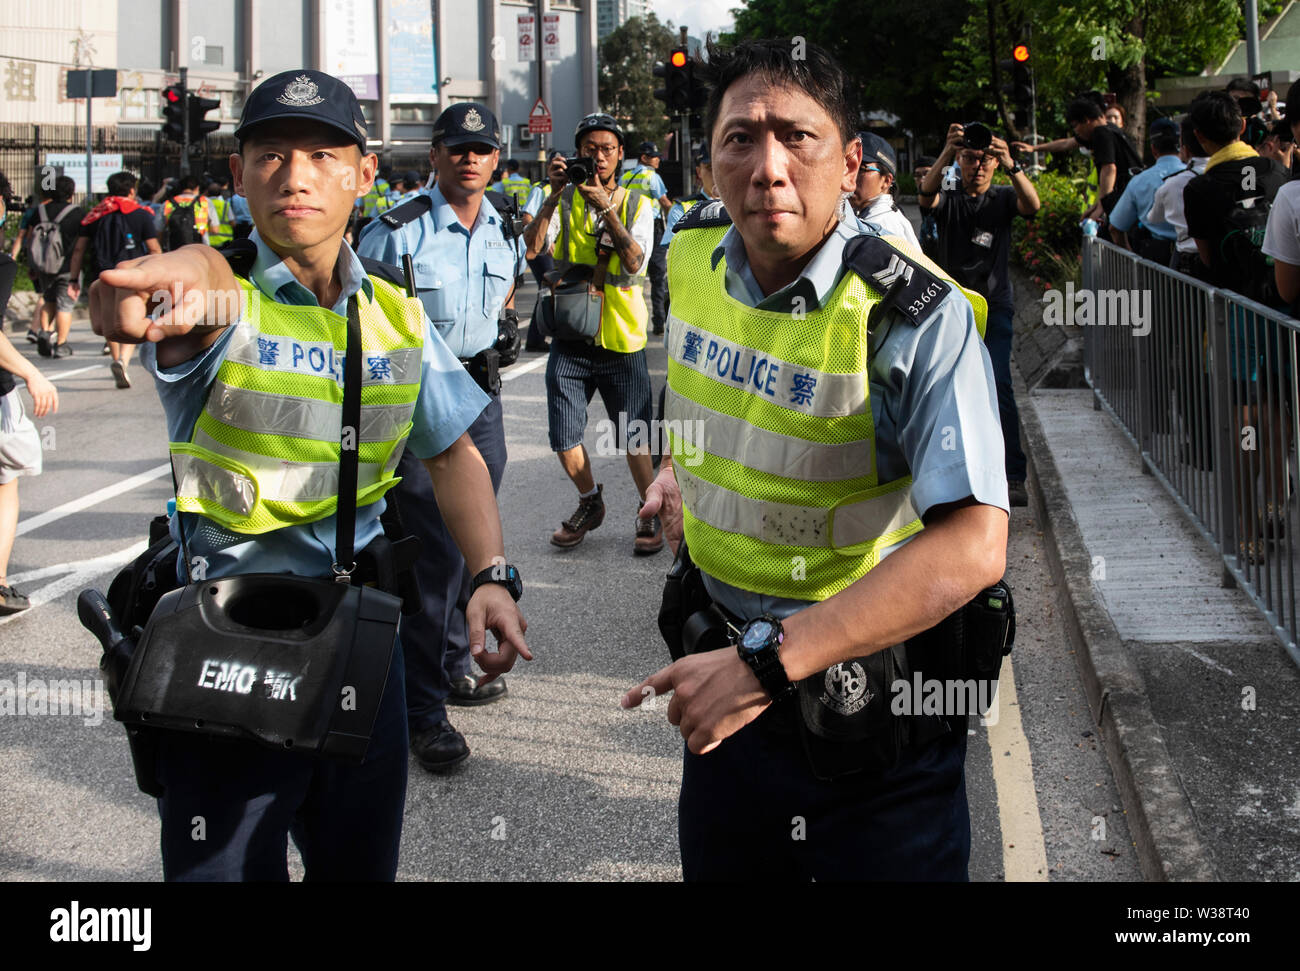 Ein Polizist zeigt auf ein demonstrant während der zusammenstöße. Tausende von Demonstranten auf den Straßen der Sheung Shui Bezirk im Norden von Hong Kong in einer anti-parallel trading März nahm. Einige Demonstranten mit der Polizei aneinandergeraten Nach dem März. Die Zahl der Demonstranten gemeldet werden, verletzt zu werden. Stockfoto